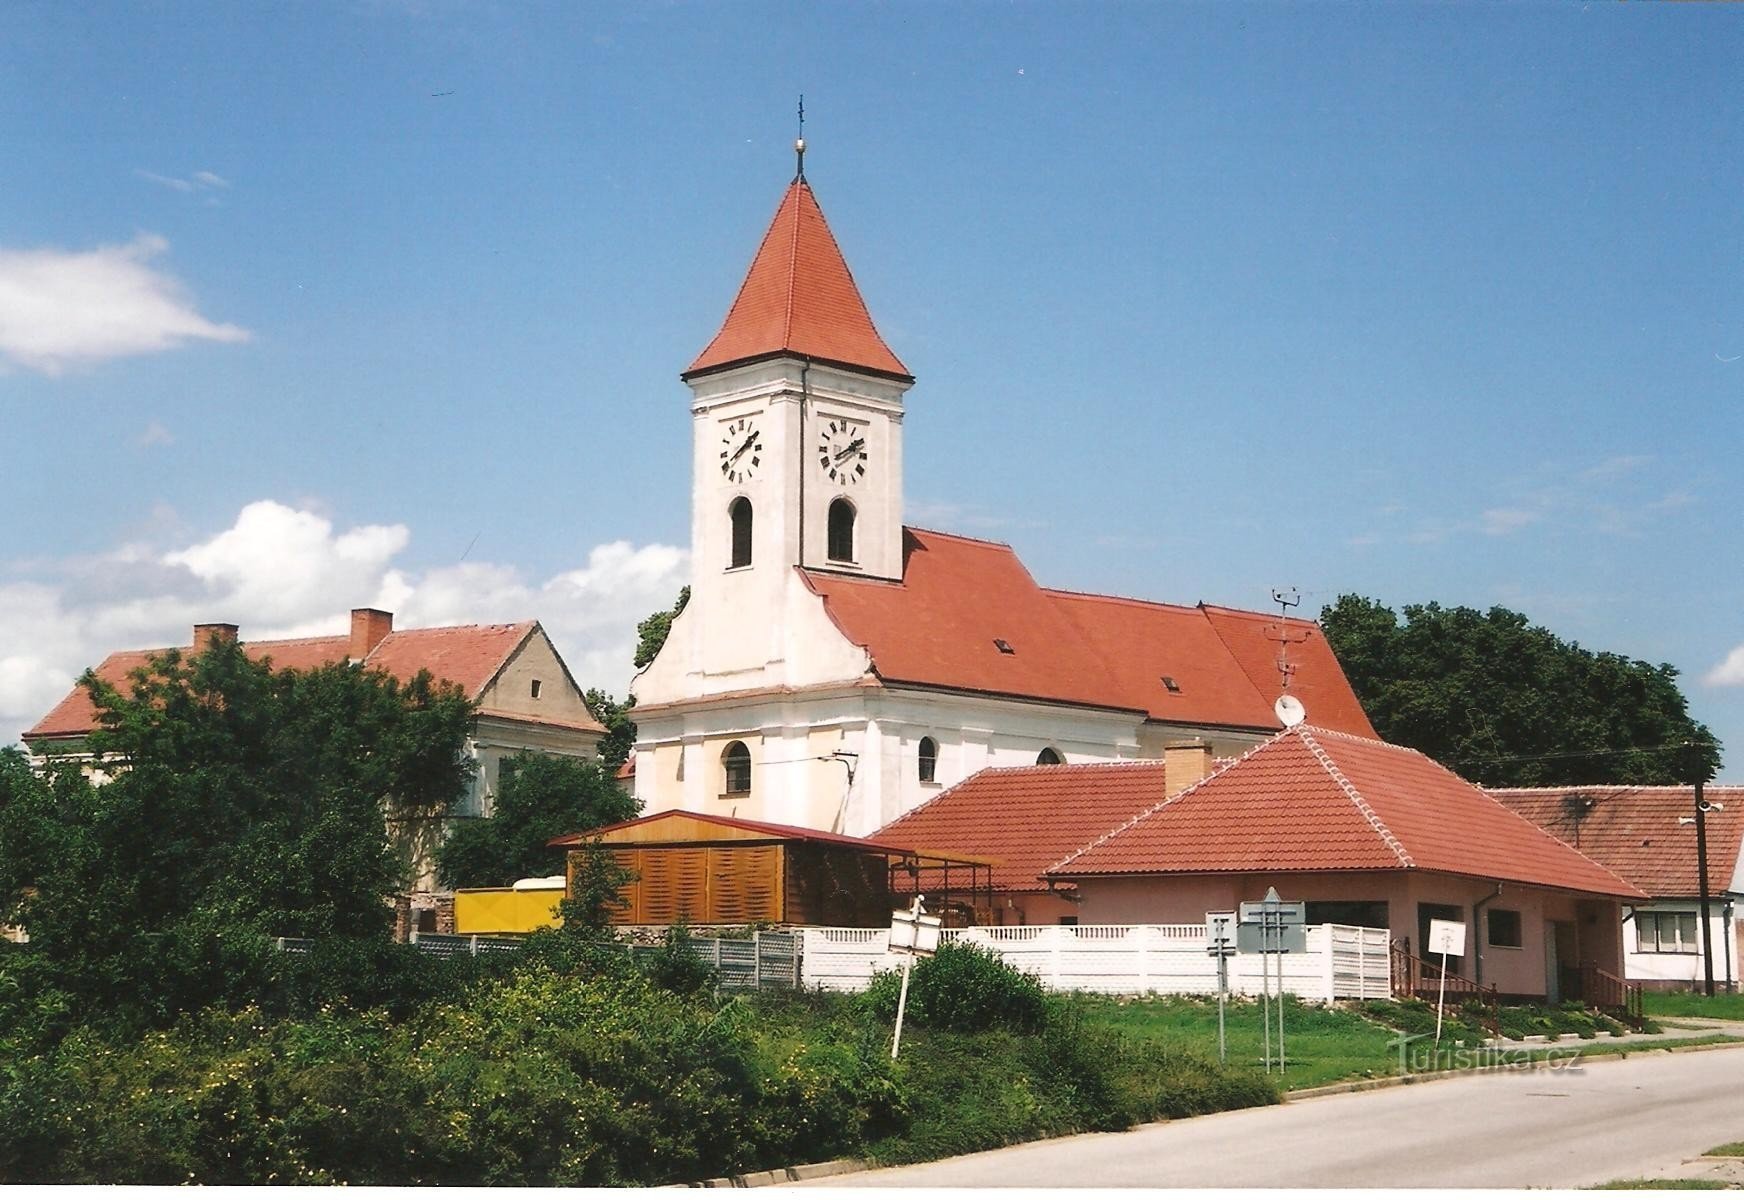 Kostel sv. Jiljí - celkový pohled